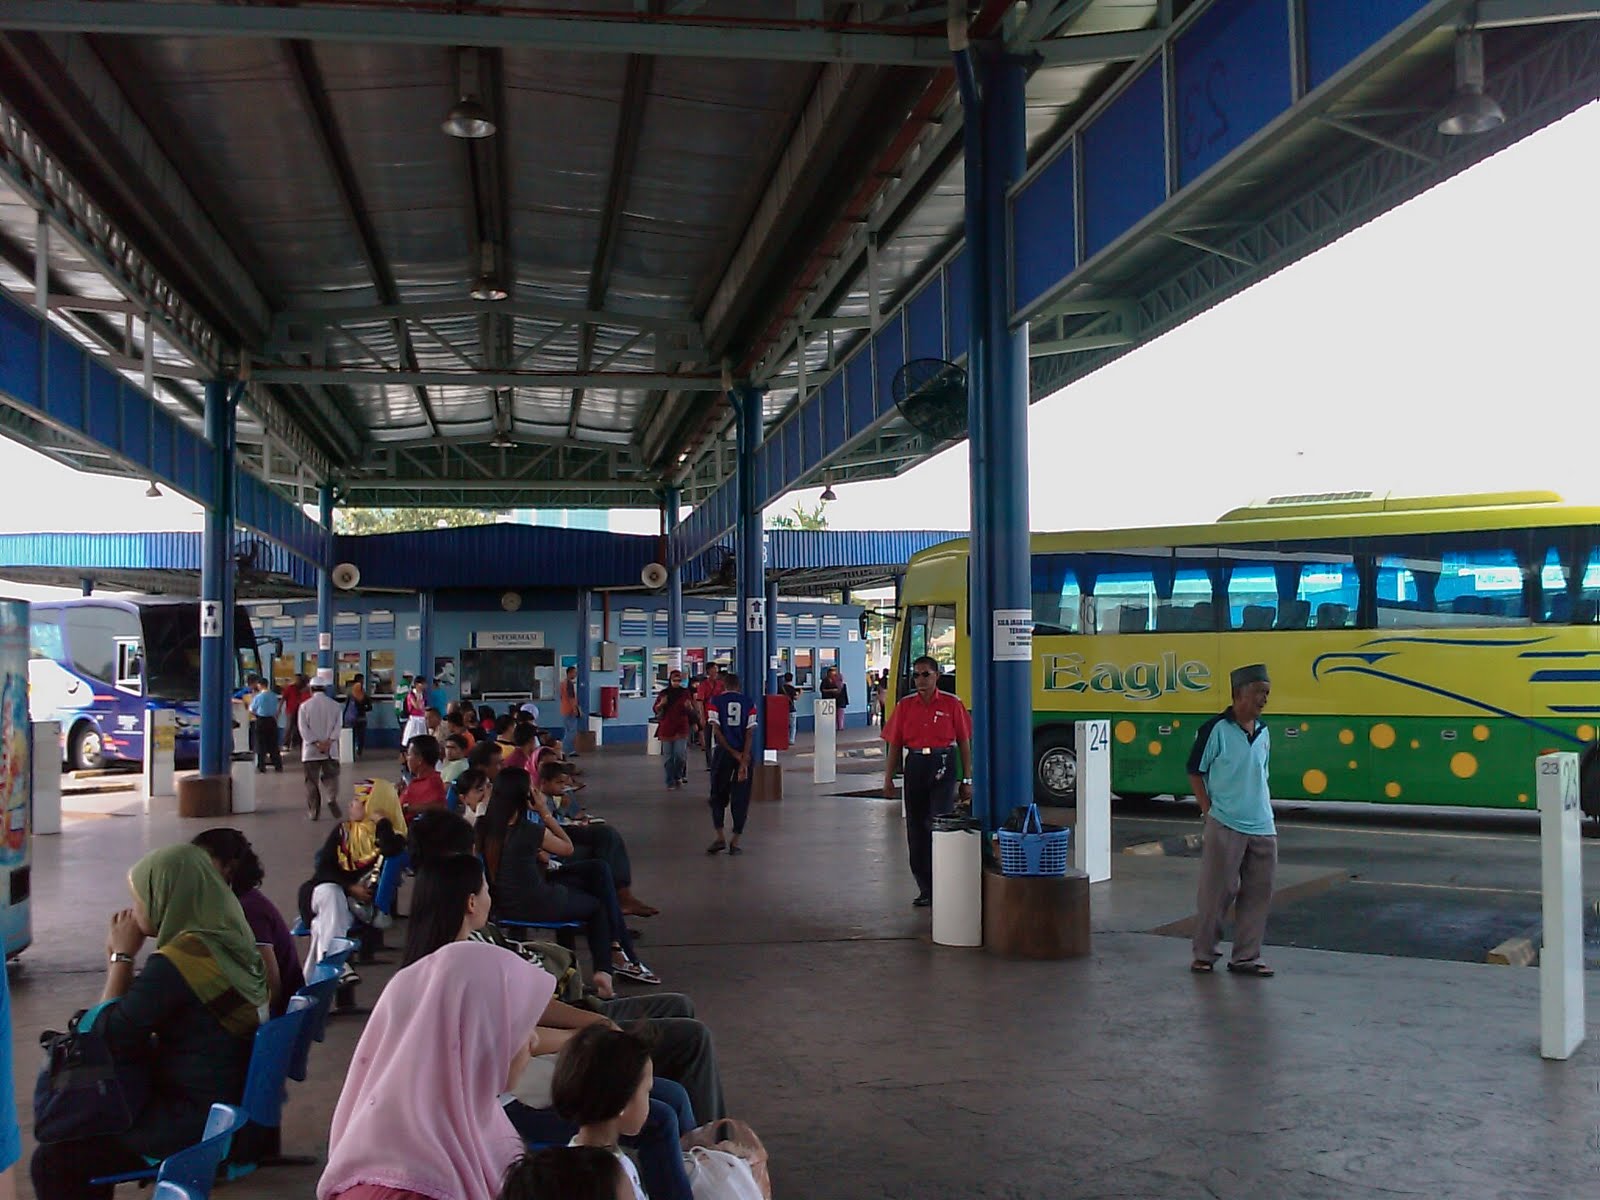 Stesen Bas Jalan Duta - LRT, bas Rapid KL lanjut operasi malam merdeka